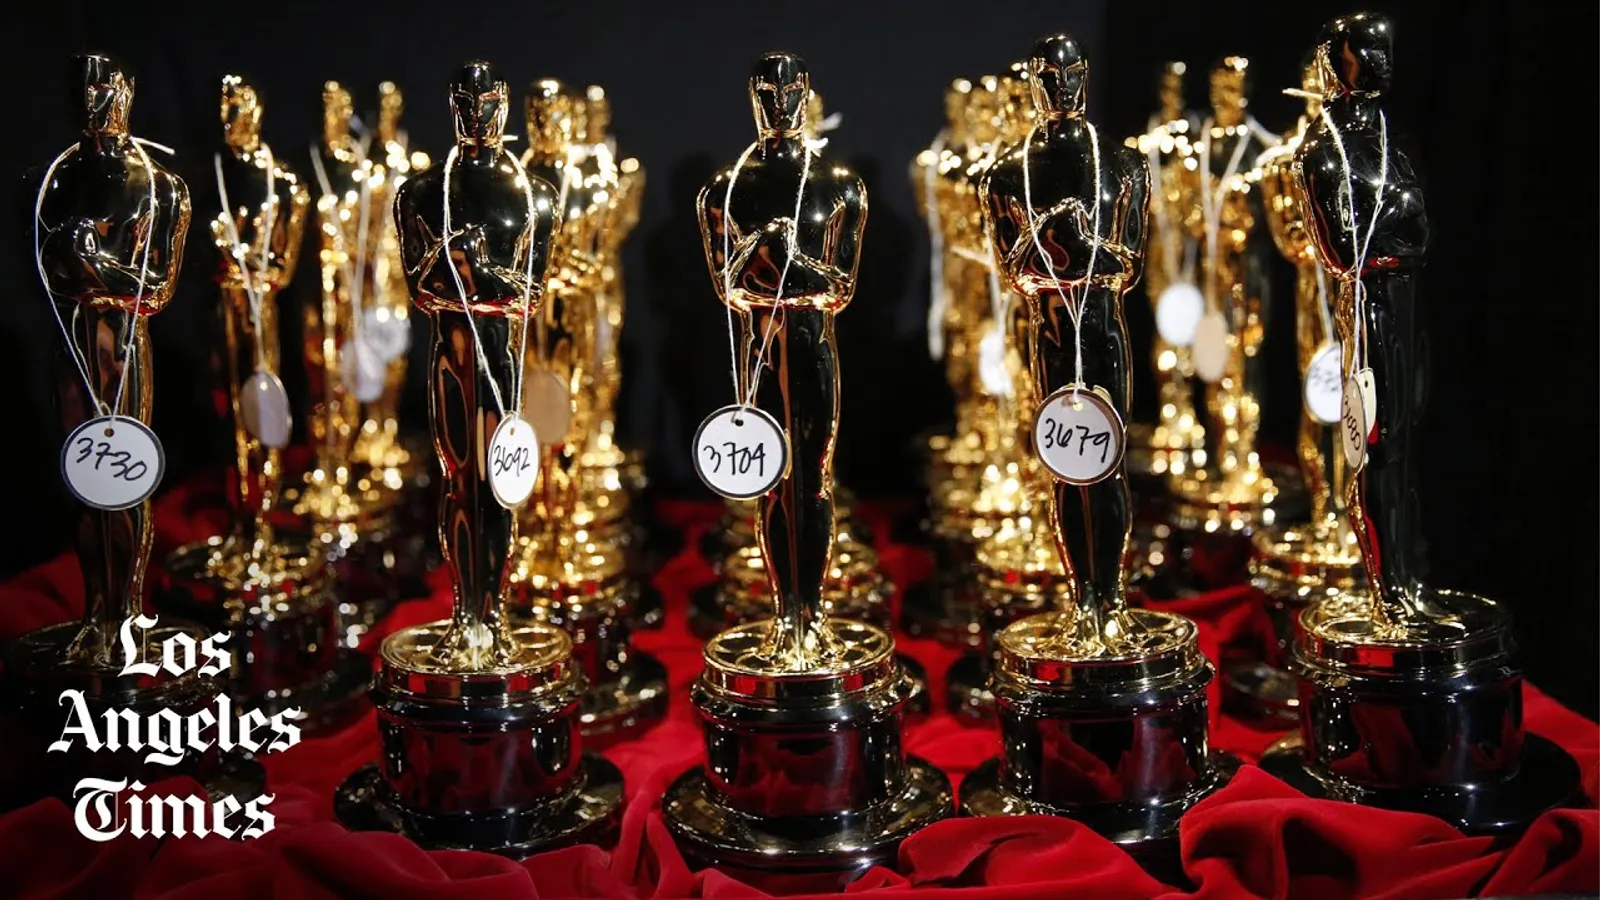 Dinilai Tidak Etis, Akankah Will Smith Kembalikan Piala Oscarnya?